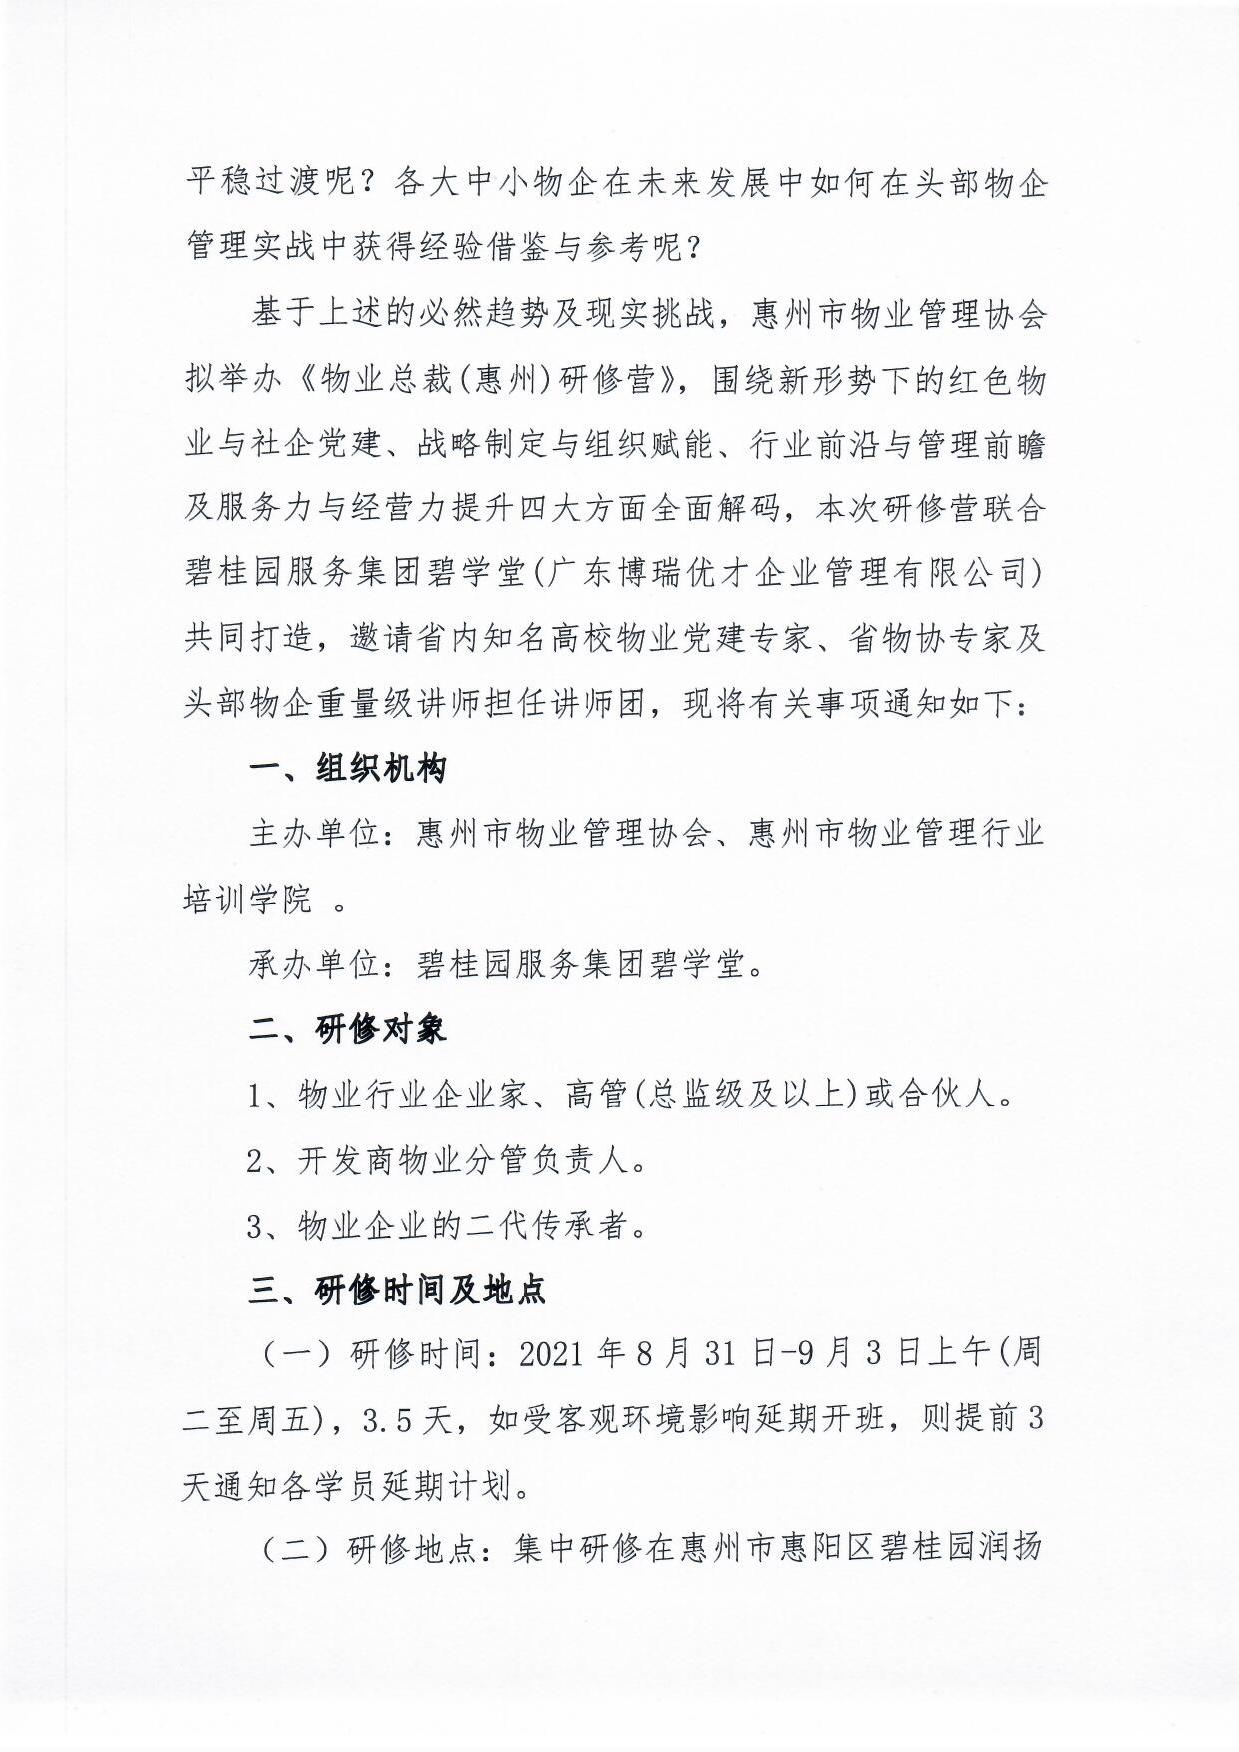 关于举办《物业总裁(惠州)研修营》的通知2.jpg